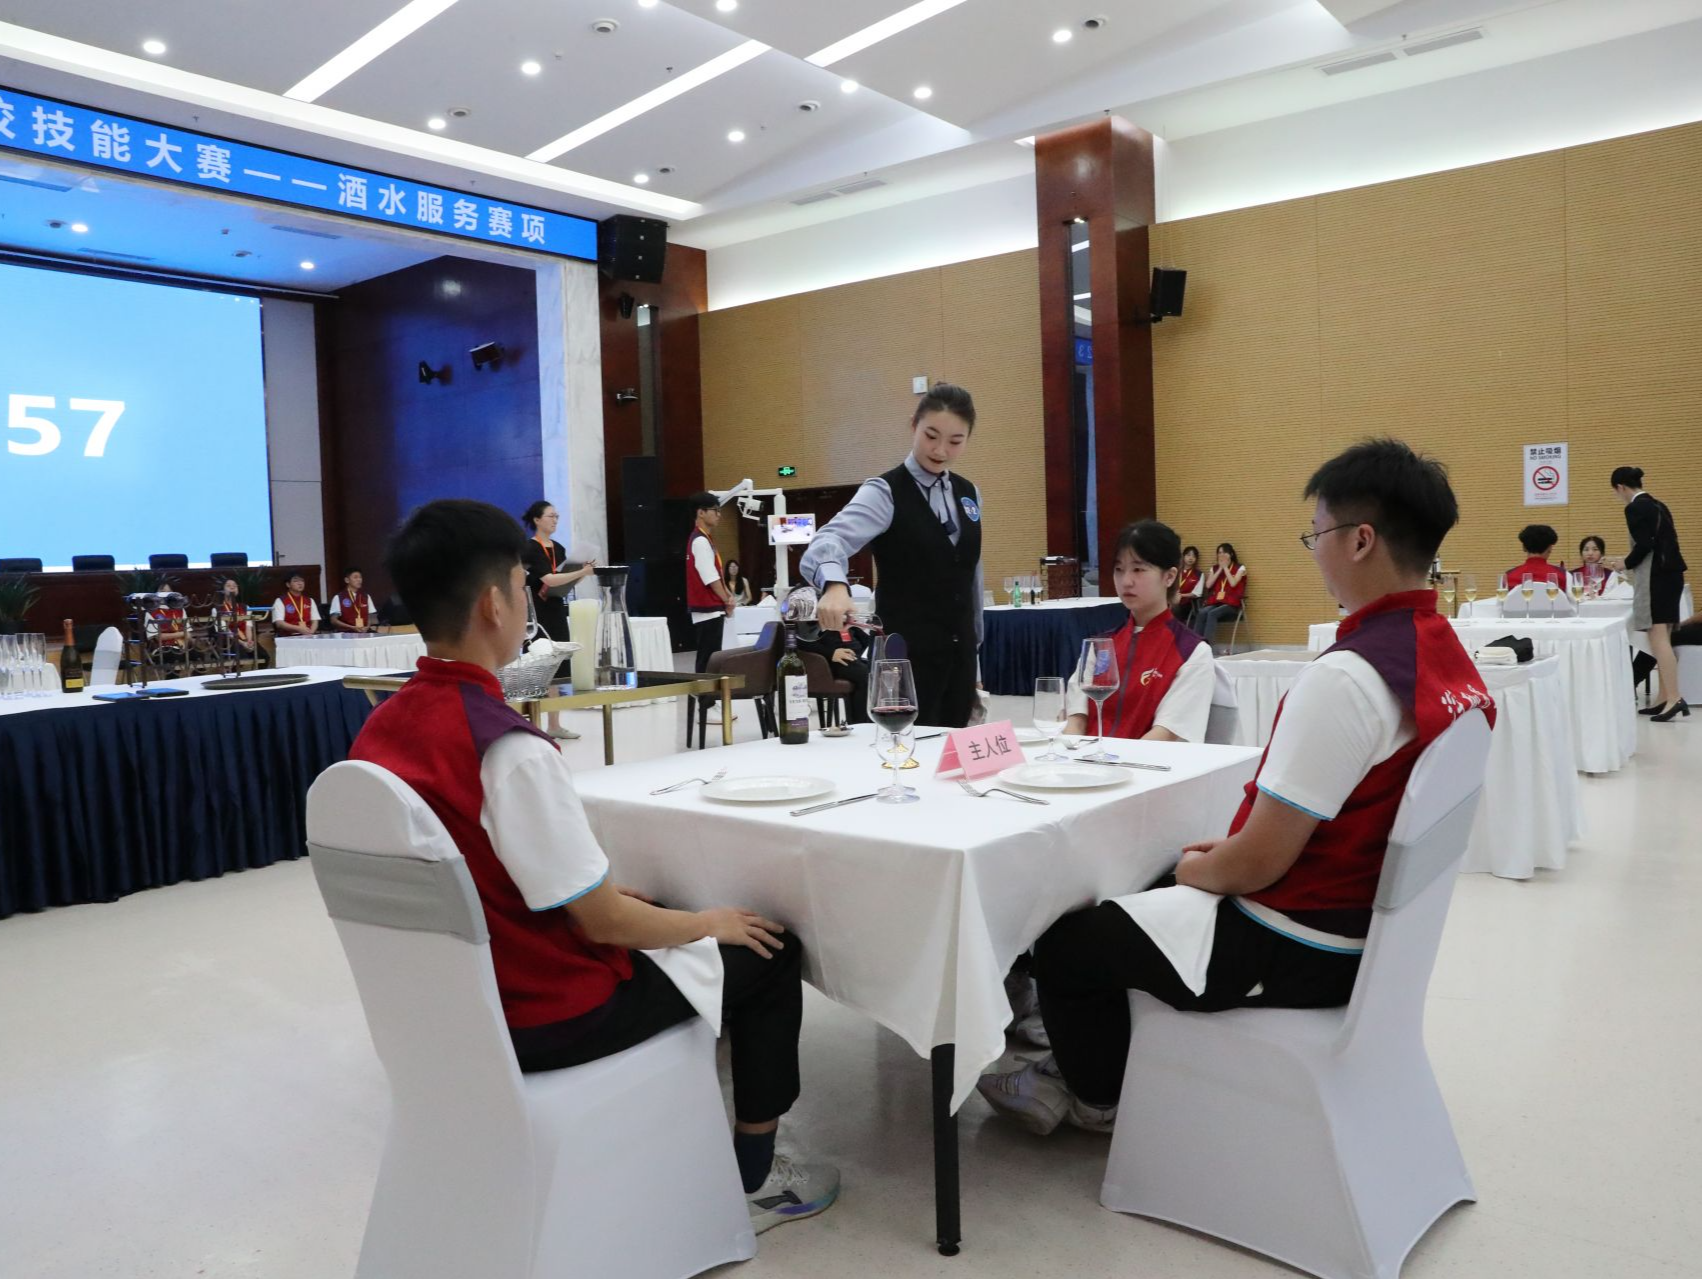 全国职业院校技能大赛高职组“酒水服务”赛项在深圳职业技术大学举行